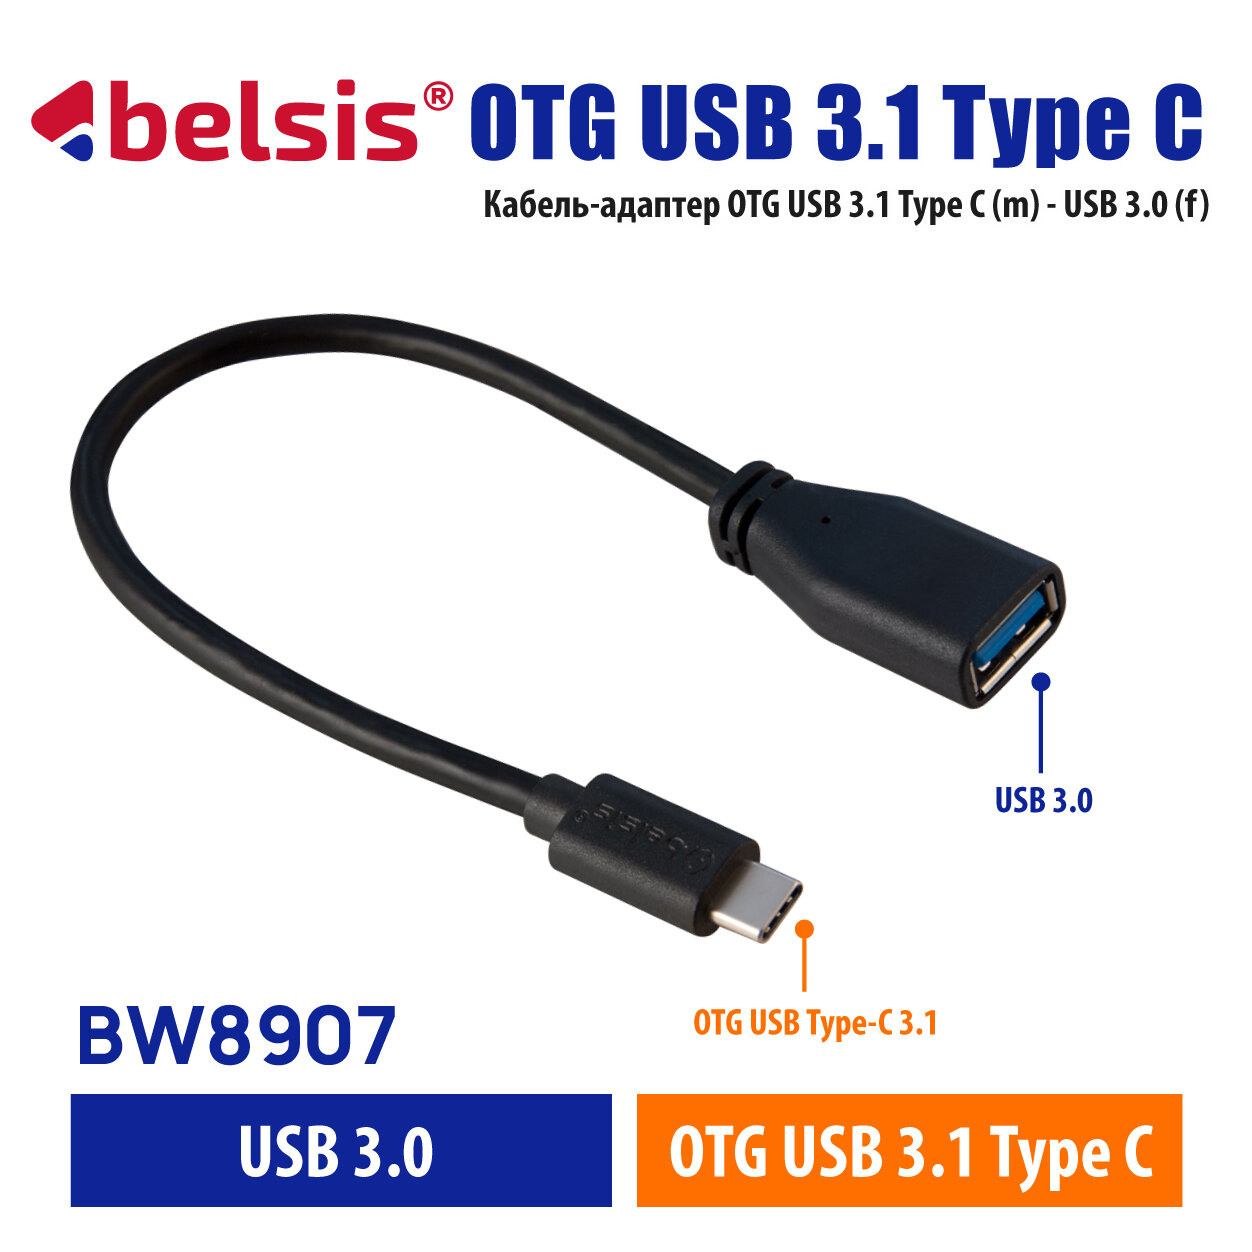 Кабель-адаптер OTG Type C - USB 3.0 Belsis для быстрой зарядки и передачи данных до 5 Гбит/с, 0.2 метра/BW8907